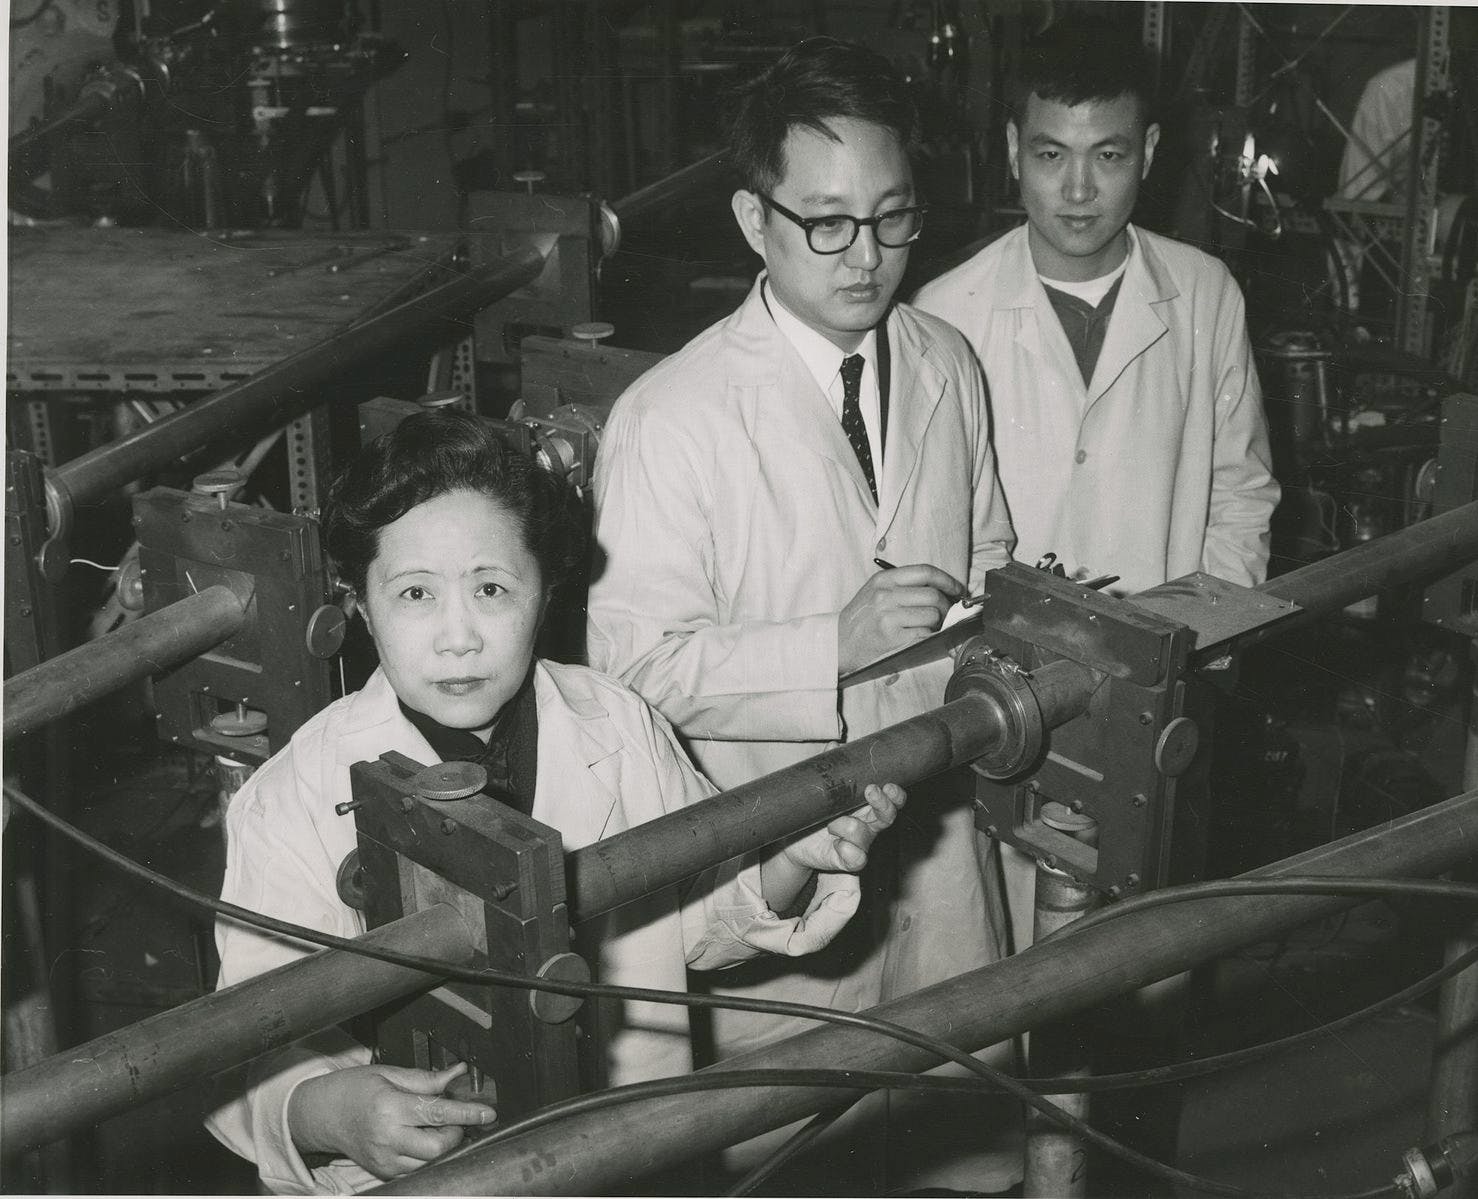 Conheça Chien-Shiung Wu, o físico nuclear que desenvolveu experimentos revolucionários